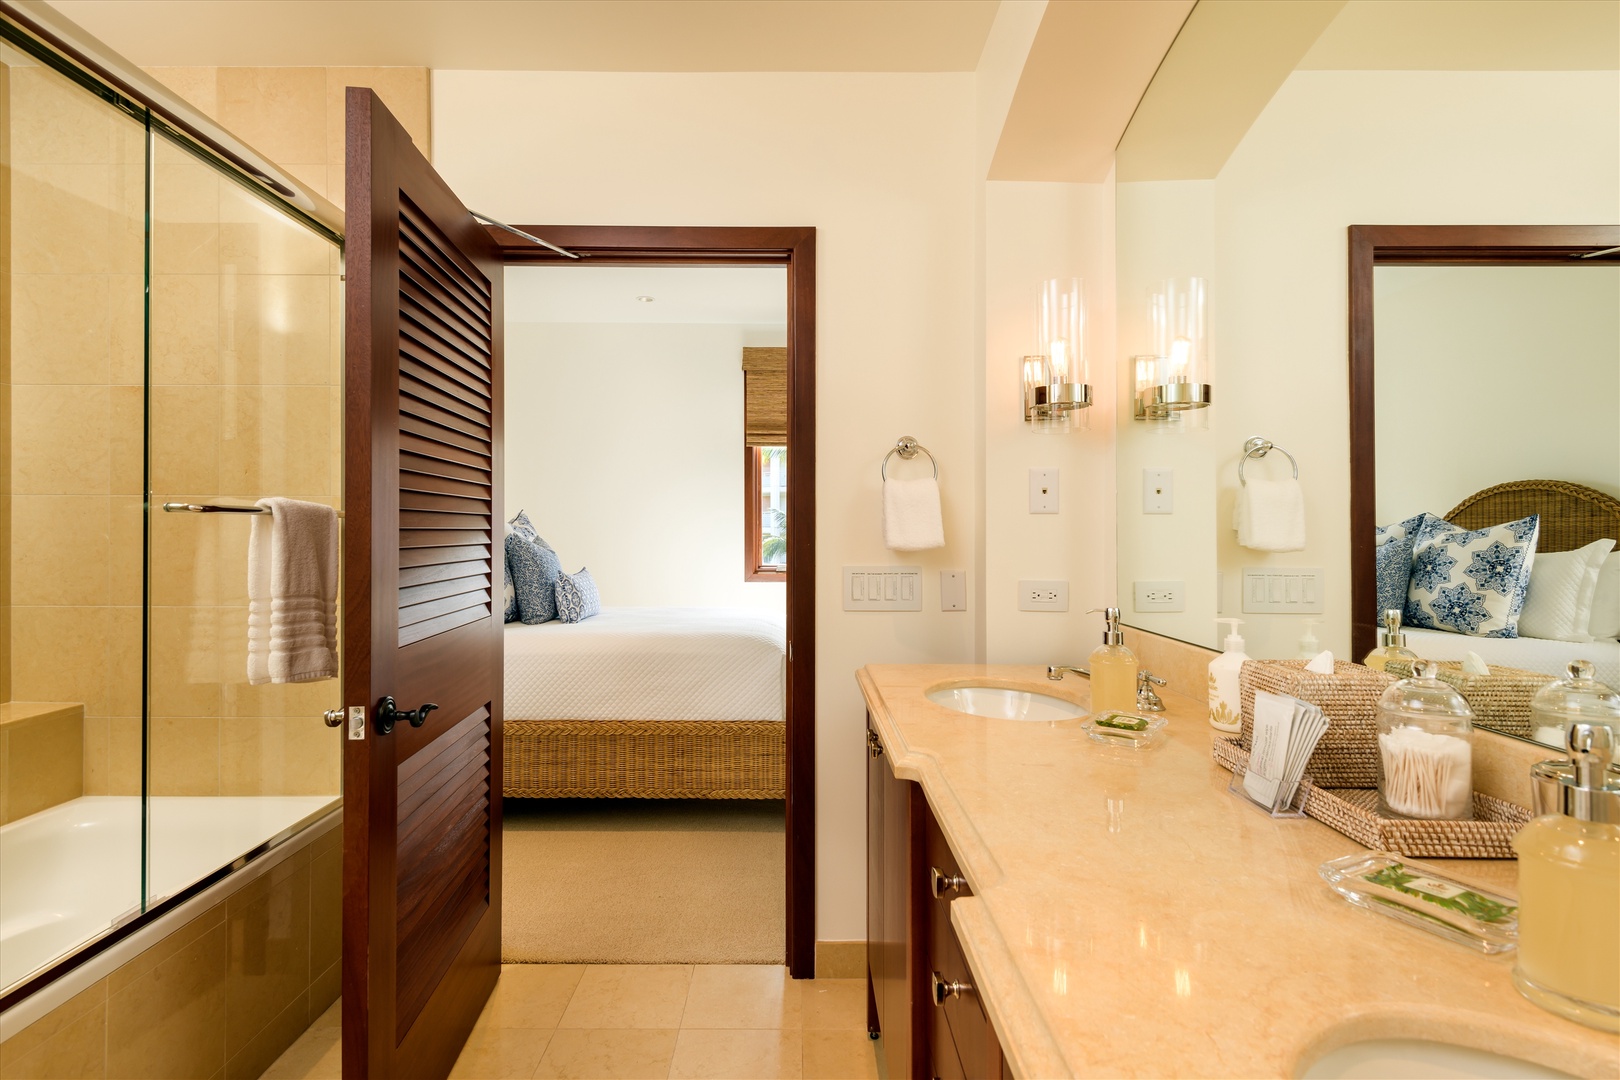 Wailea Vacation Rentals, Blue Ocean Suite H401 at Wailea Beach Villas* - 2nd Mountain View Bedroom Bathroom